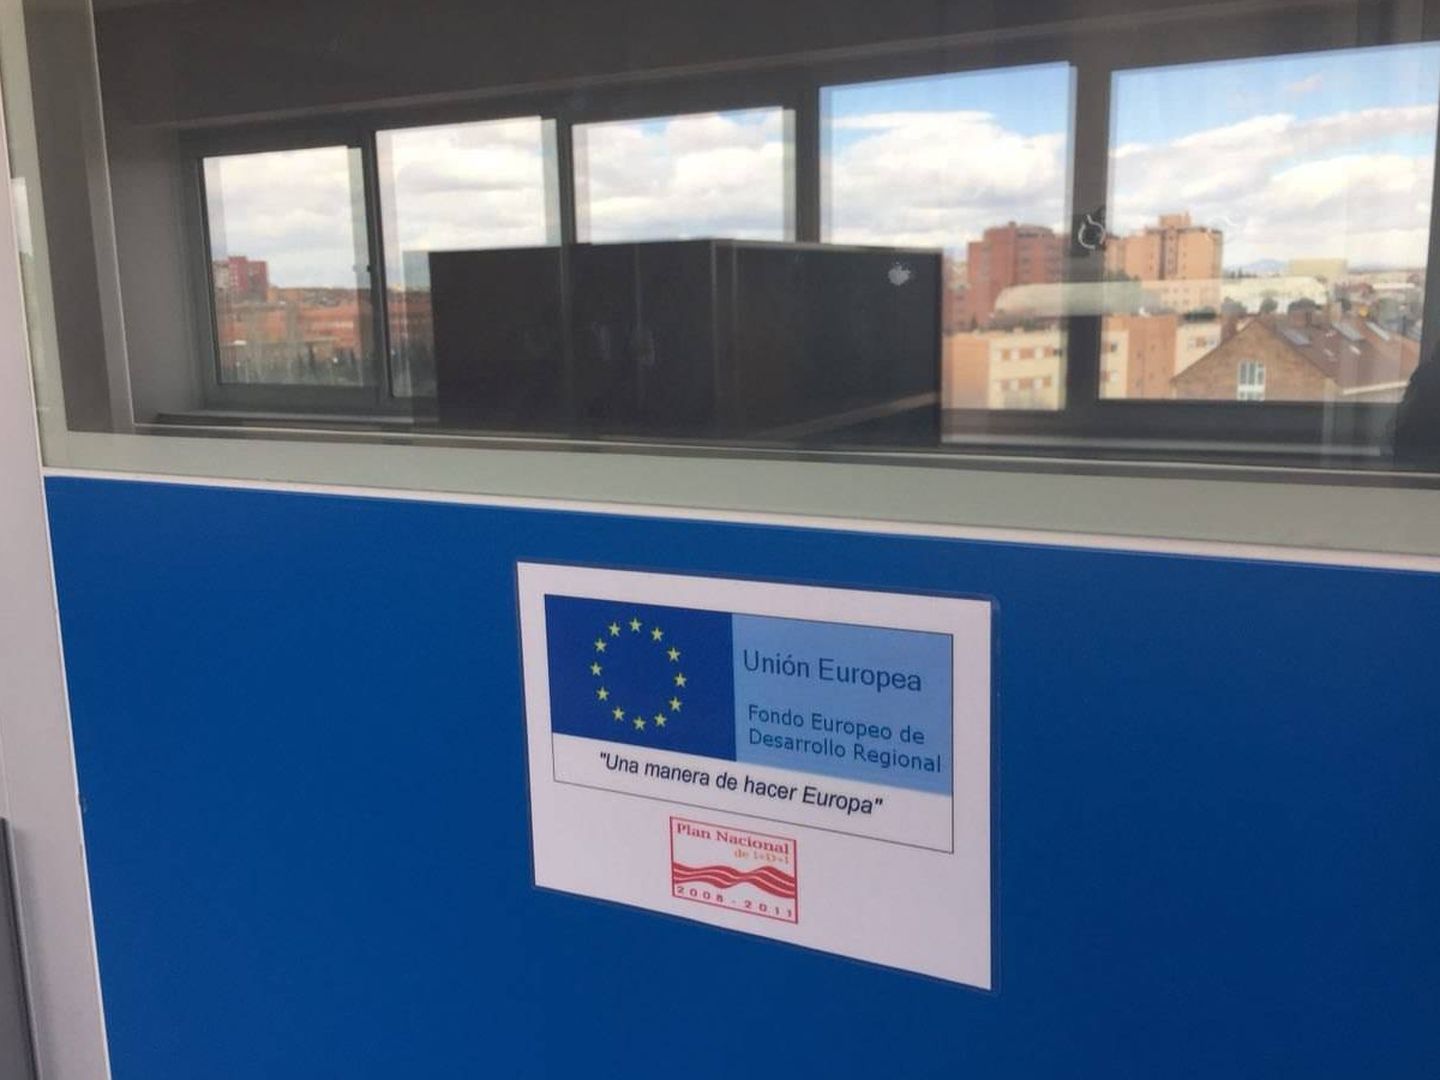 Un cartel que indica que el centro cuenta con financiación de los fondos europeos Feder.